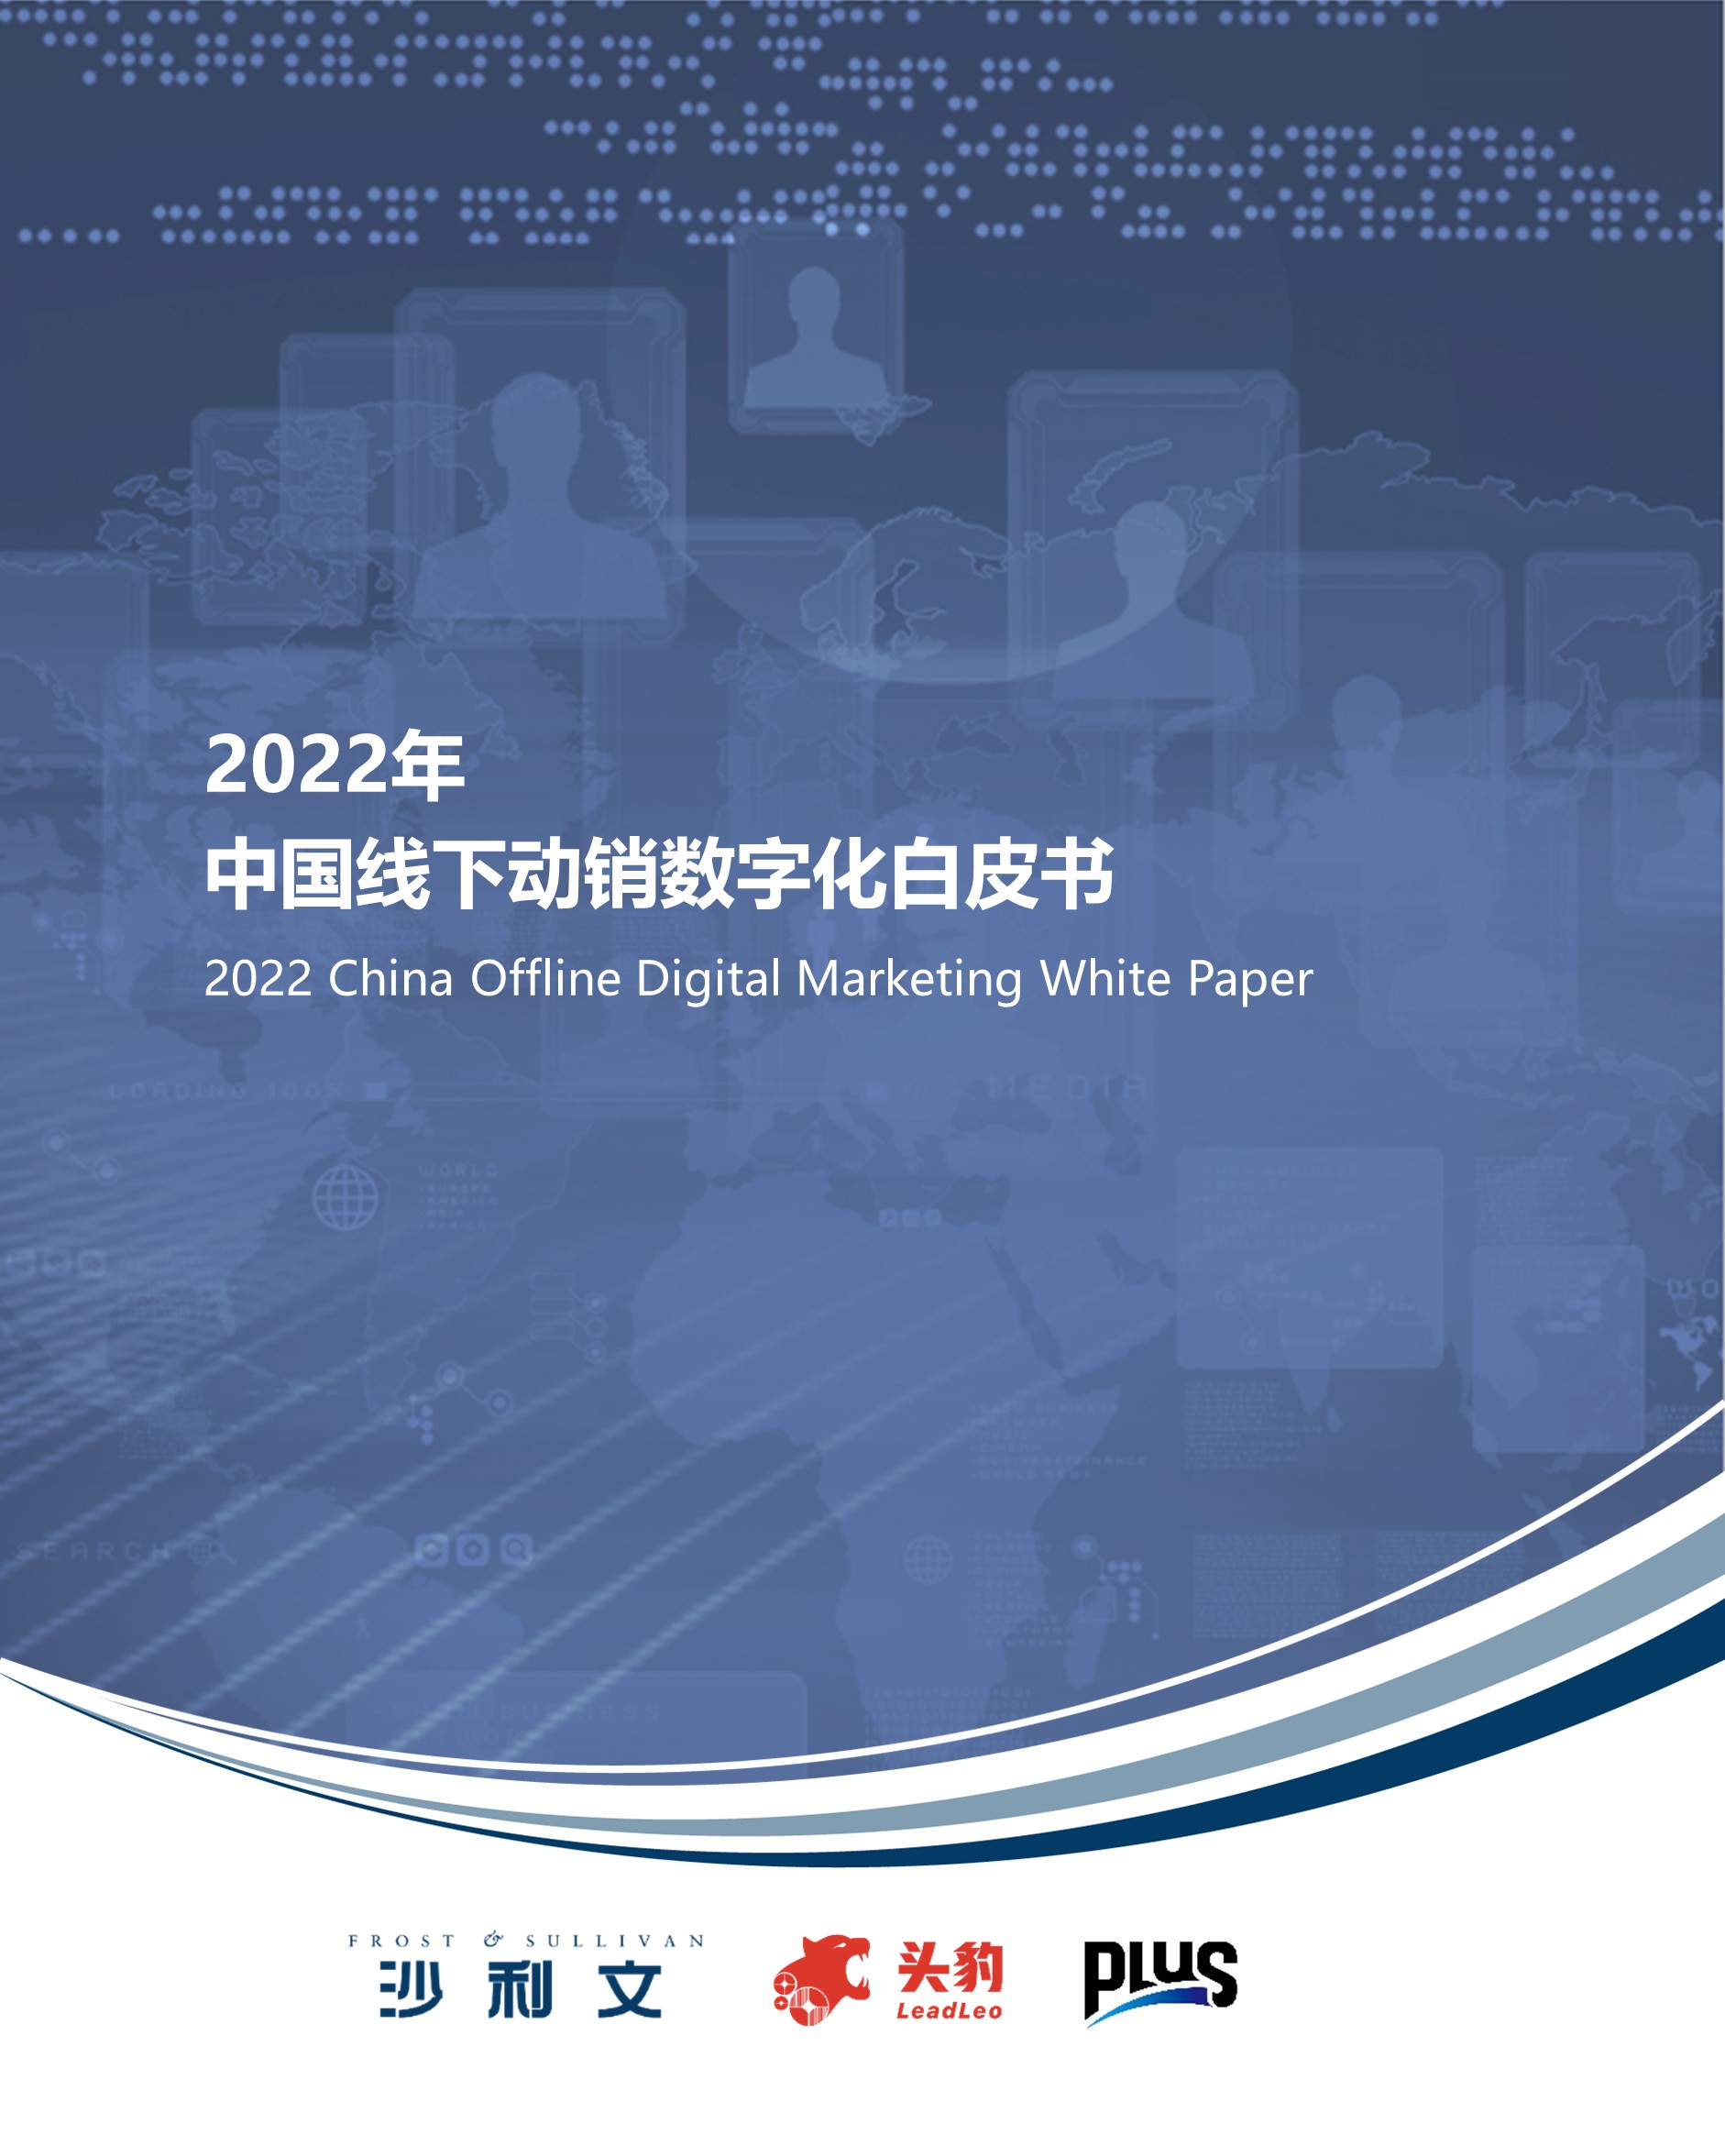 沙利文、头豹研究院联合普乐师发布《2022年中国线下动销数字化白皮书》